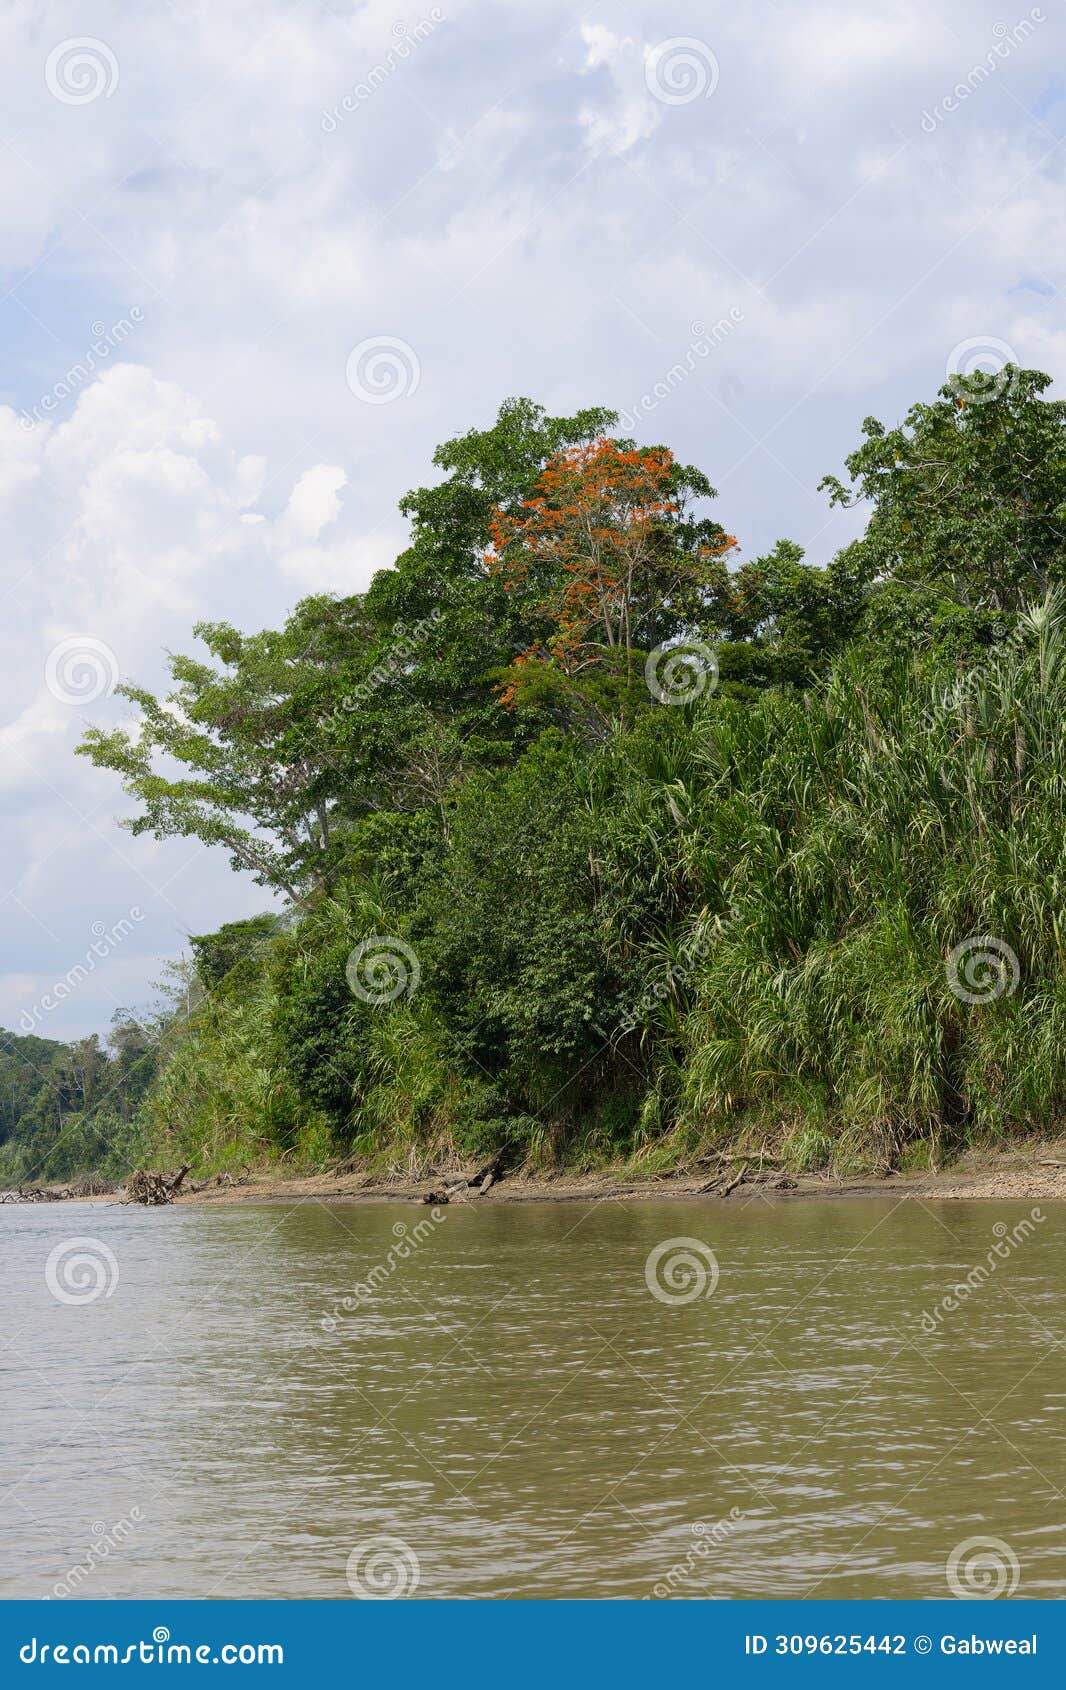 amazon tropical rain forest, rio colorado, peruvian amazon, peru